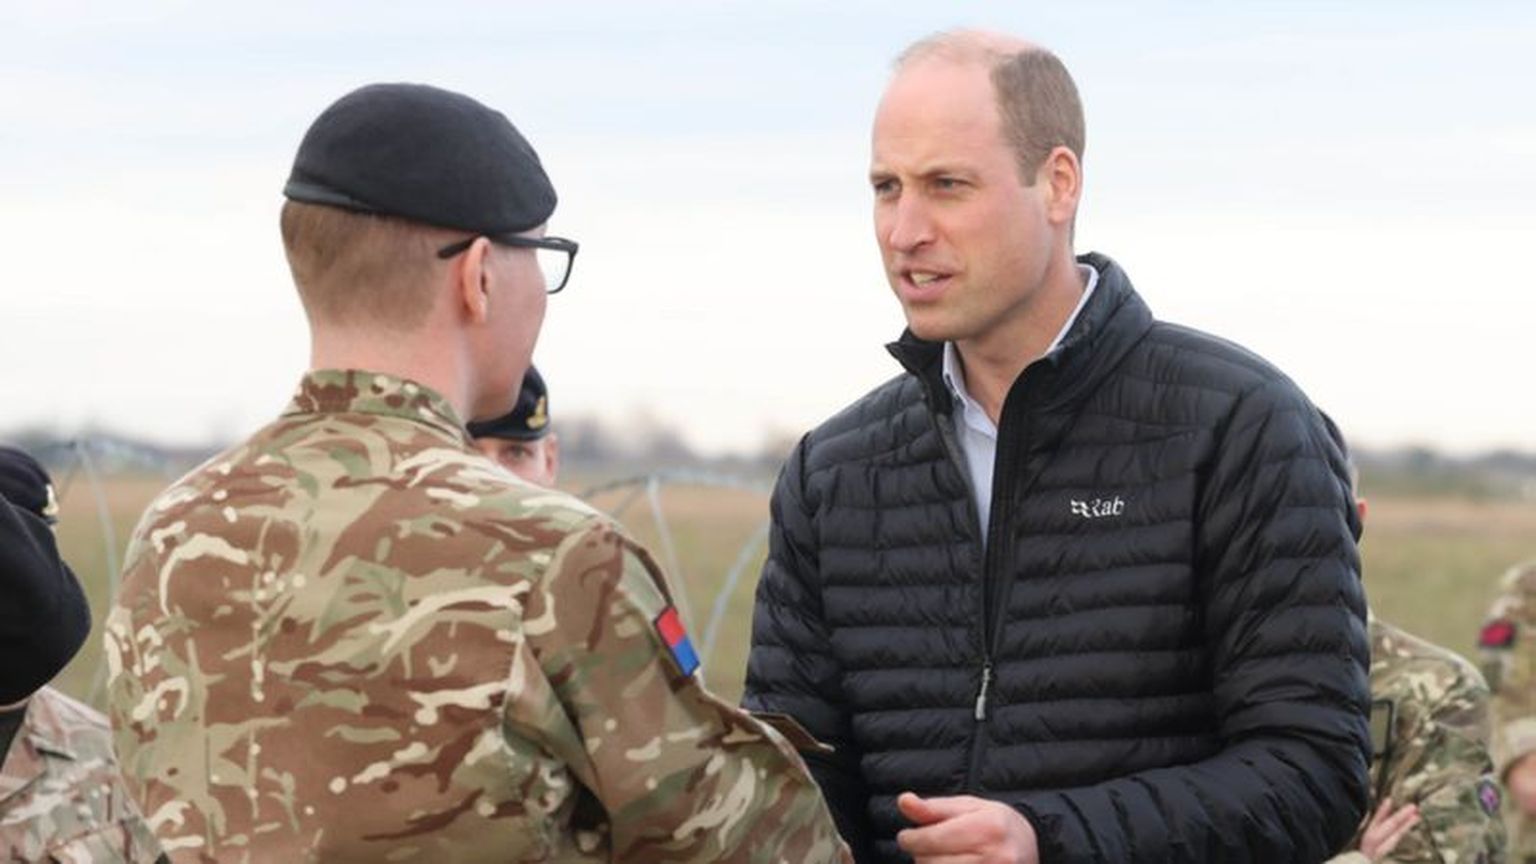 Принц Уильям побывал с неожиданным визитом на военной базе в Польше неподалеку от границы с Украиной.